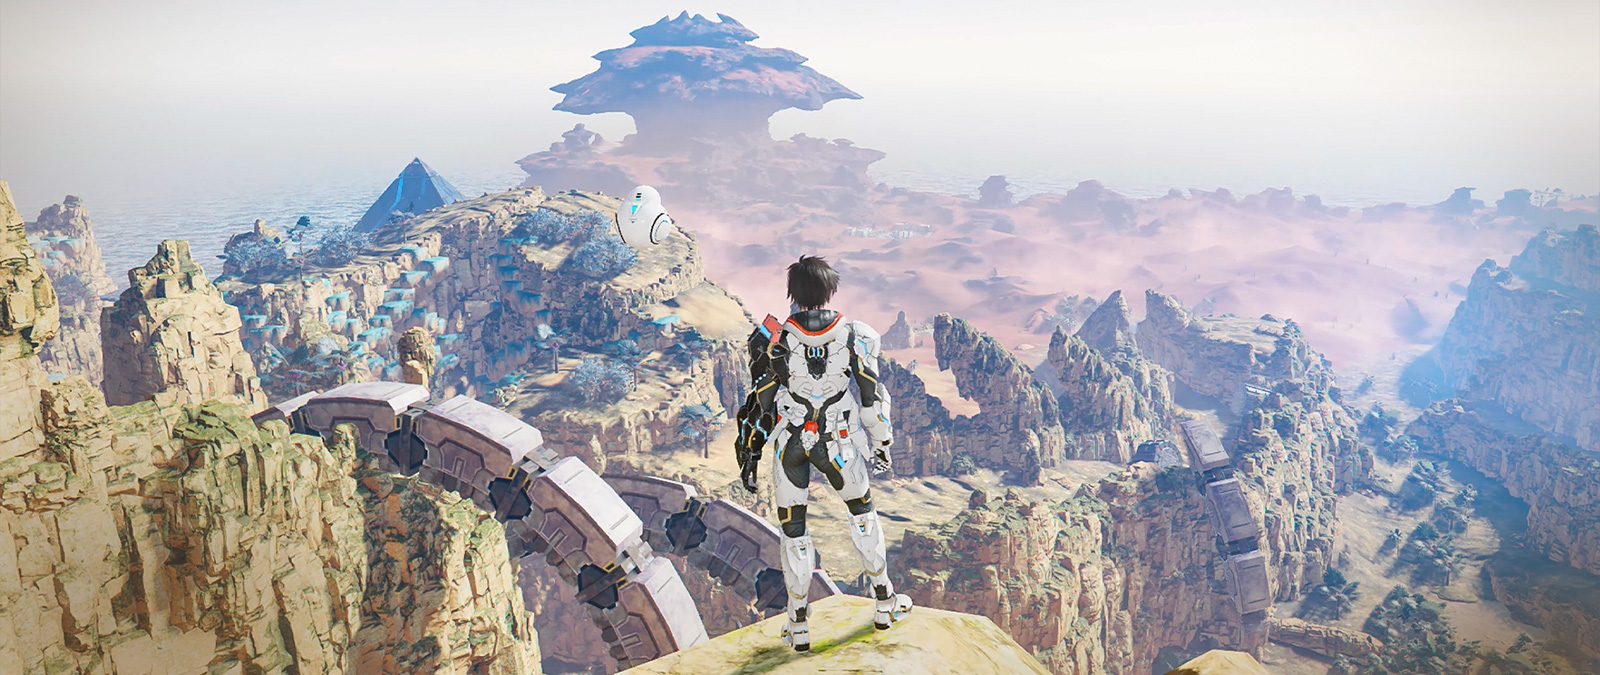 Un personaje con armadura se encuentra en un acantilado mirando hacia un valle.